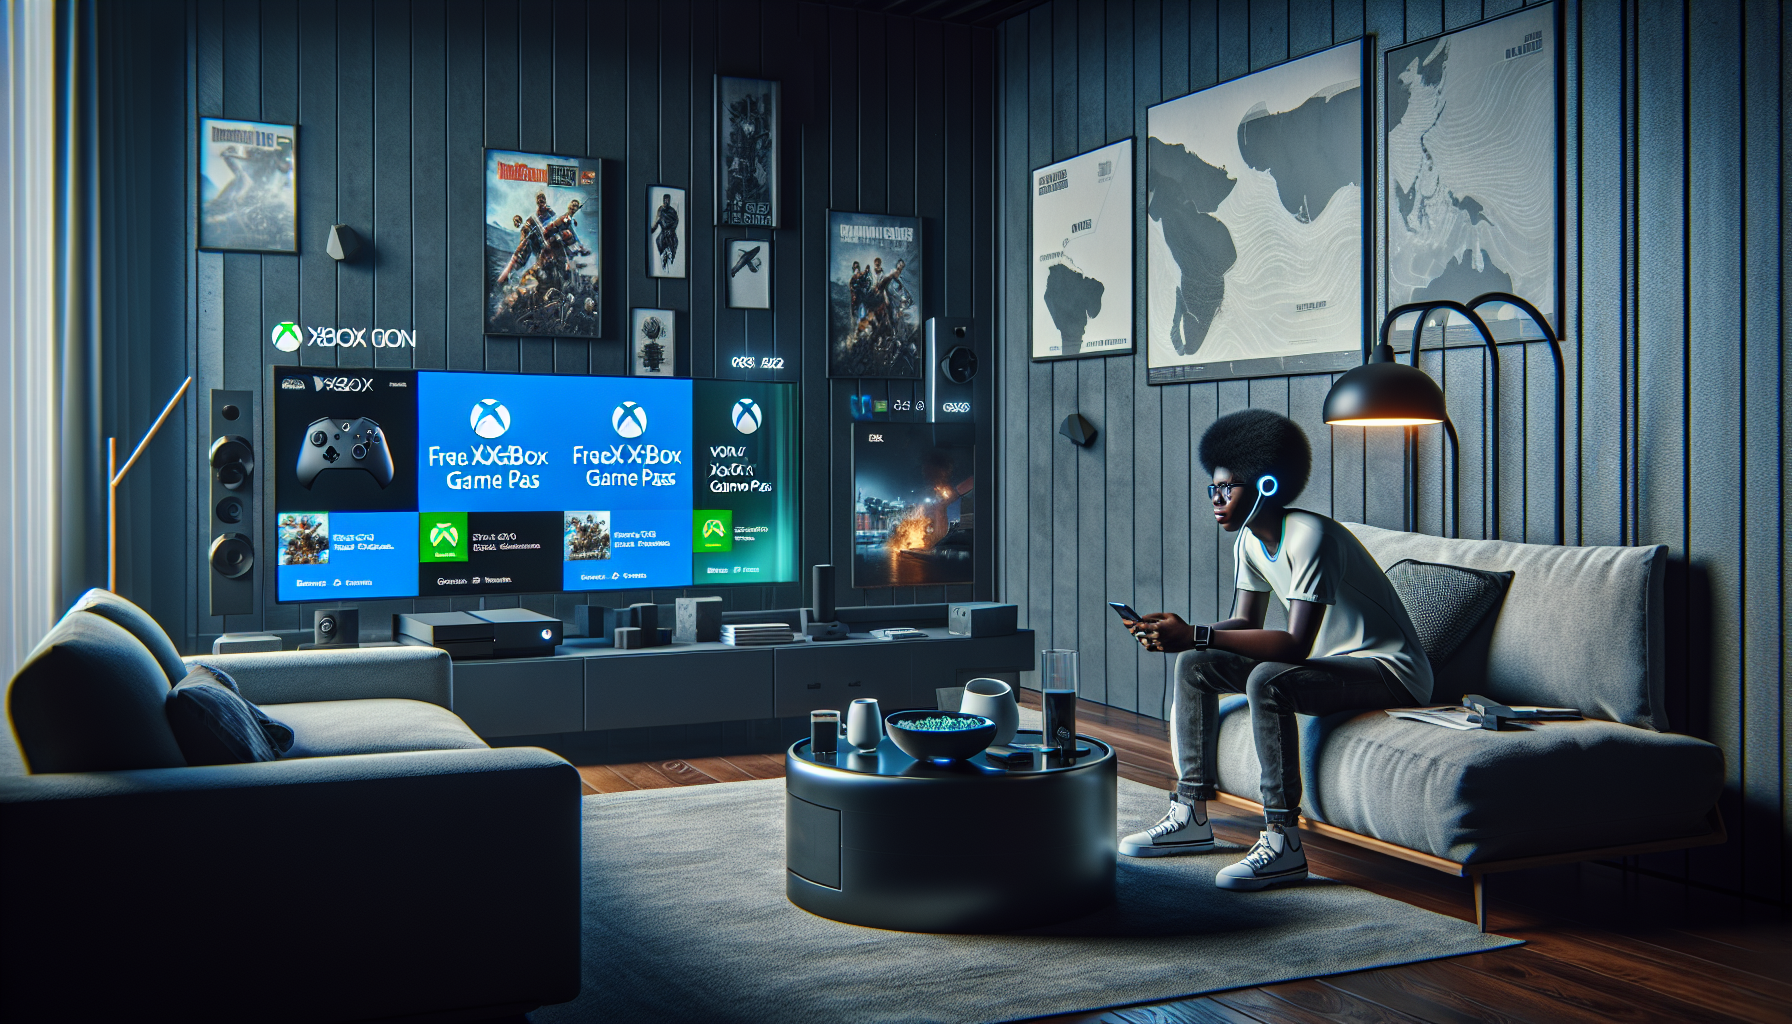 Xbox Game Pass Gratis con Anuncios: 30 Segundos te Dan 2 Horas de Juego - Plan Revolucionario de Microsoft